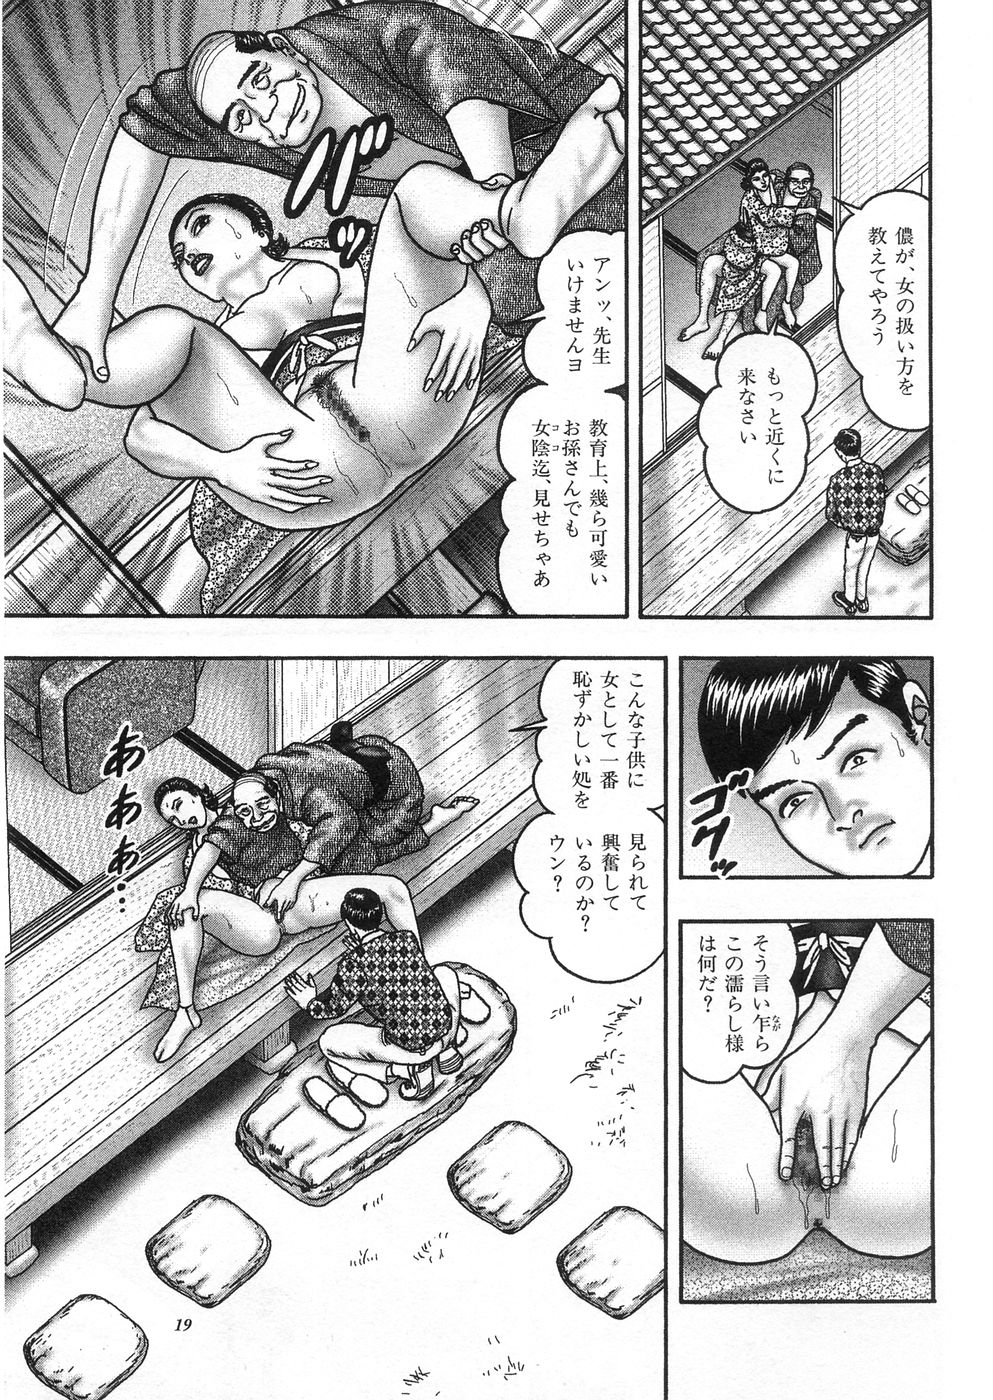 [Horie Tankei] Jukujo Game 3 - Otto no Shiranai Watashi page 17 full